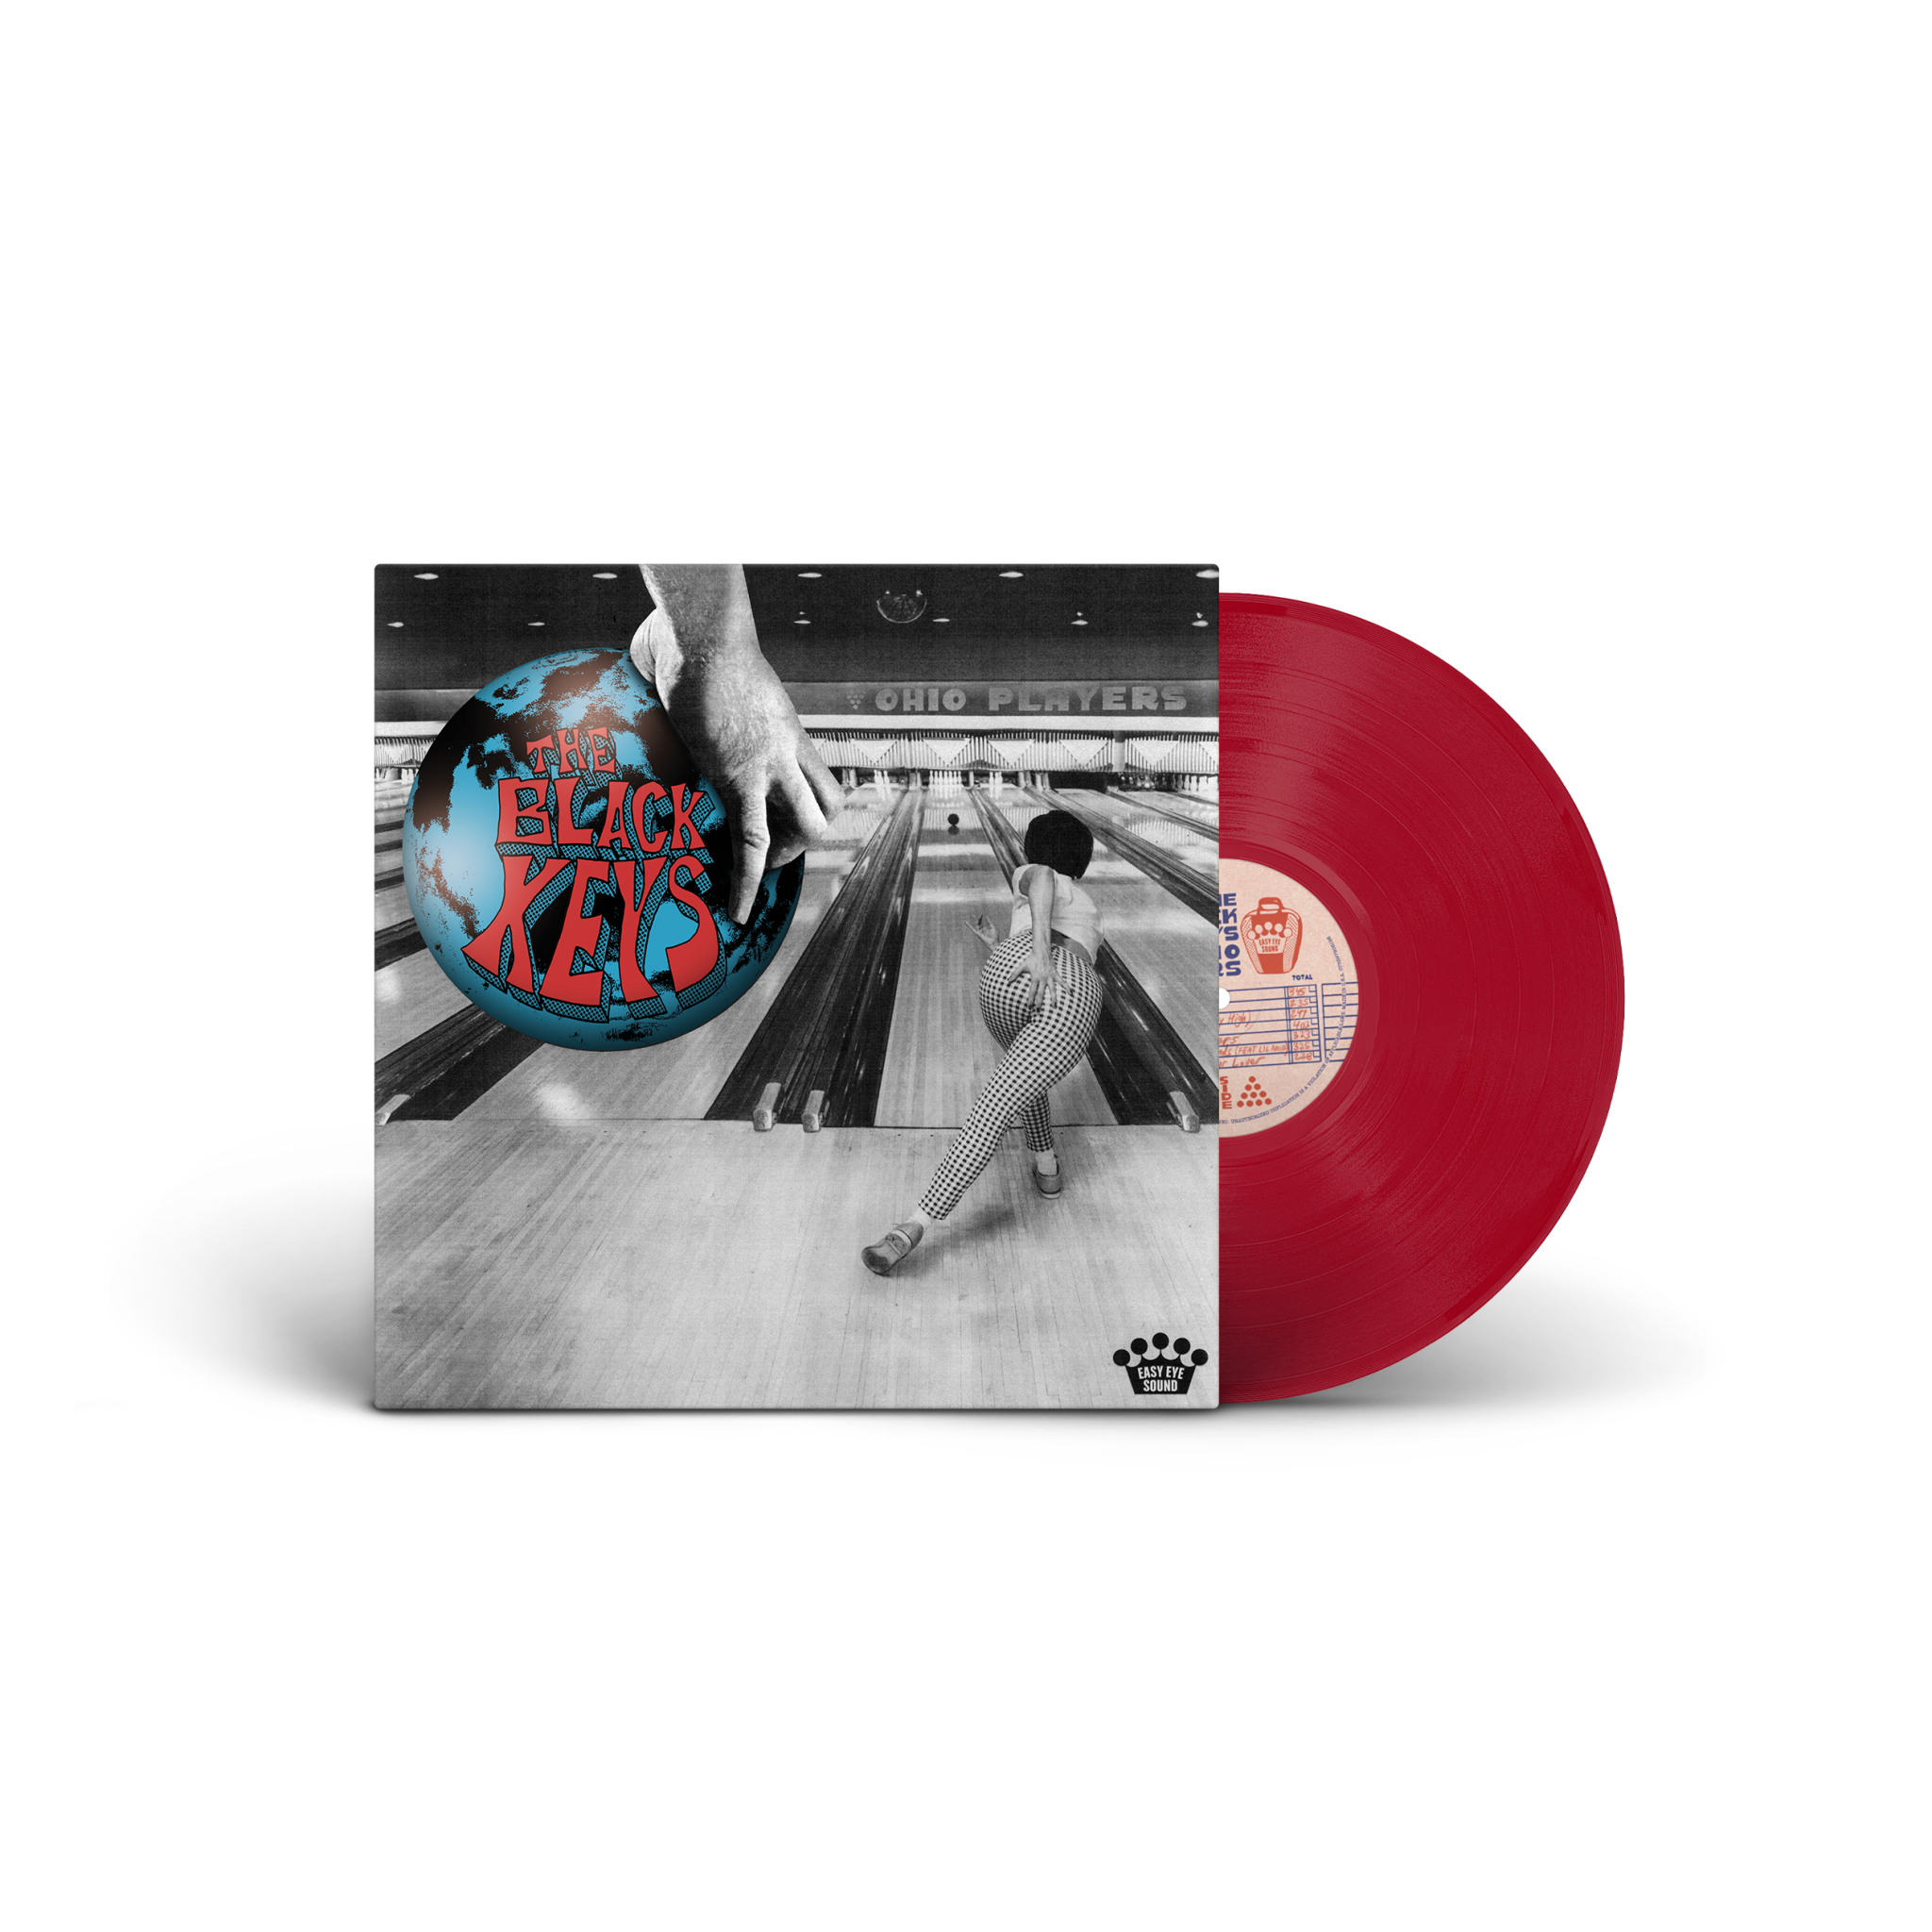 Black Keys- Ohio Players (Indie Exclusive Apple Red Vinyl) (PREORDER)